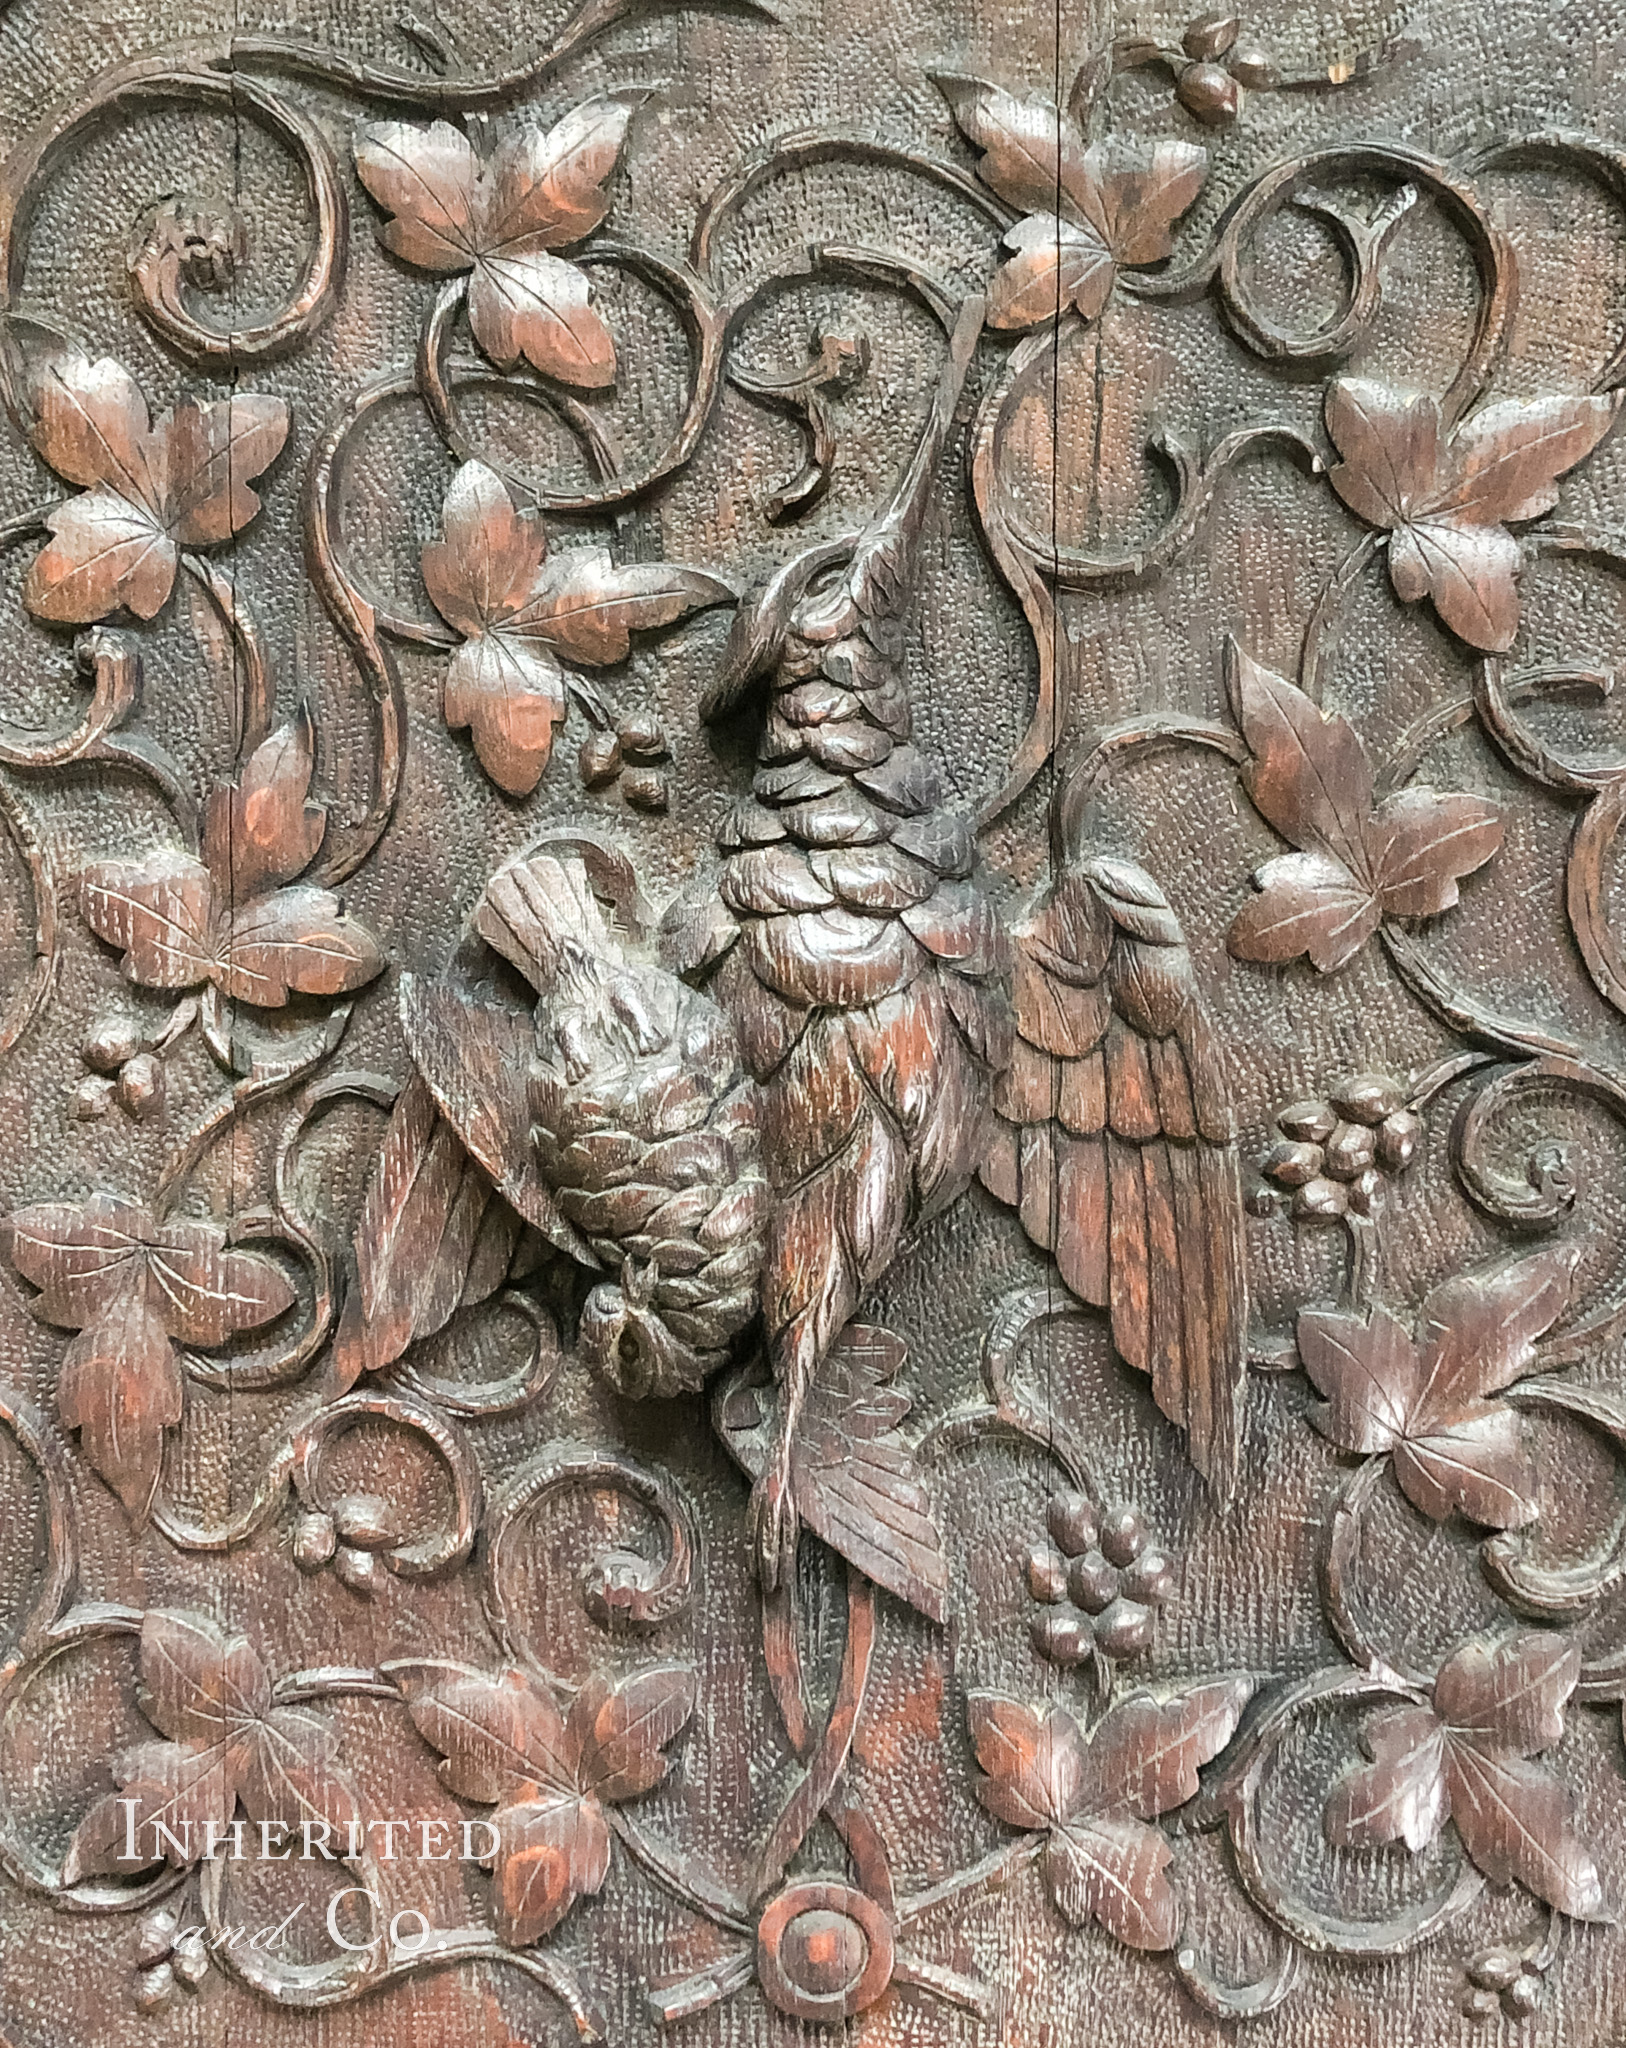 Bird carving on antique door